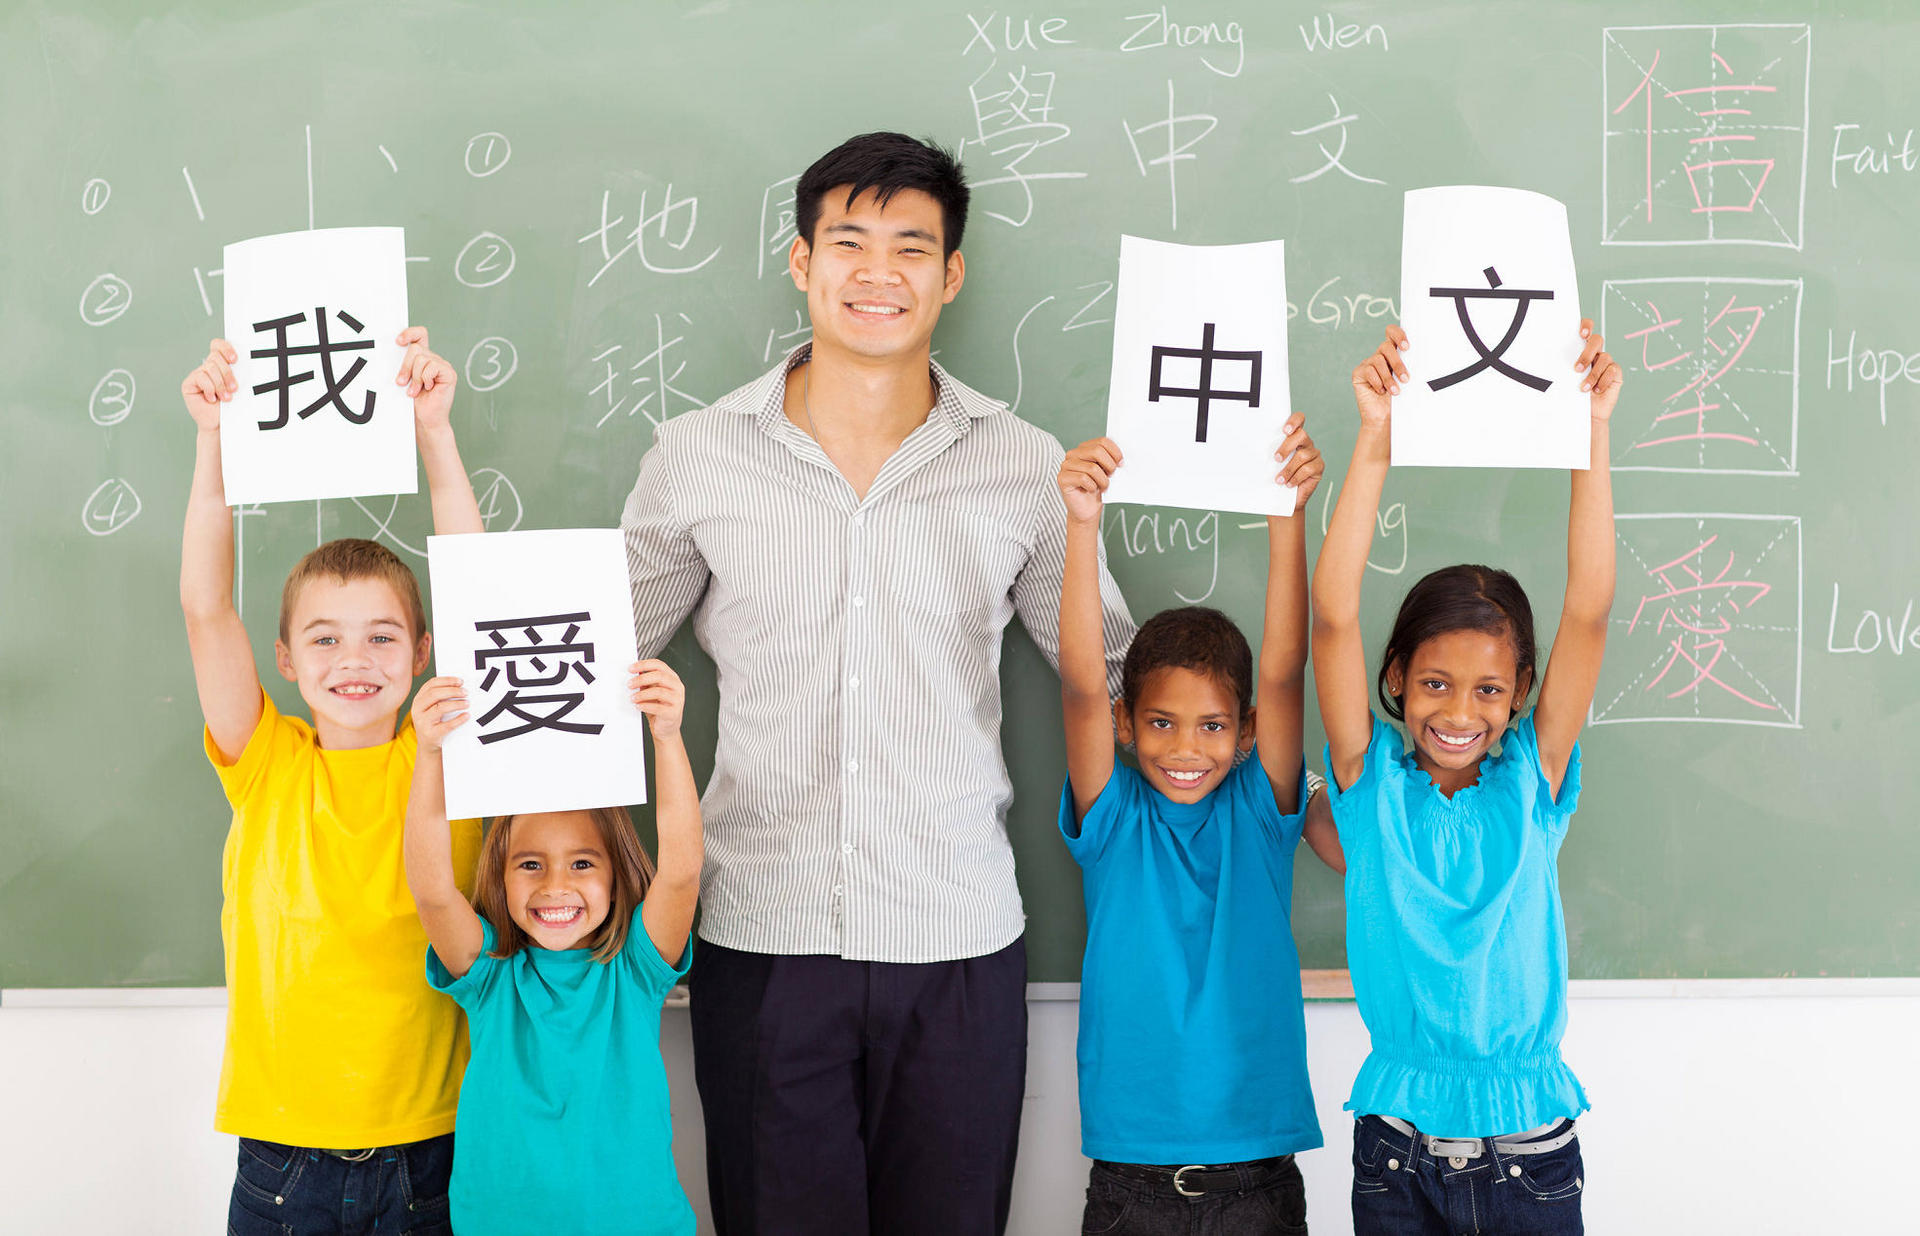 "I love Chinese". Photo: Shutterstock